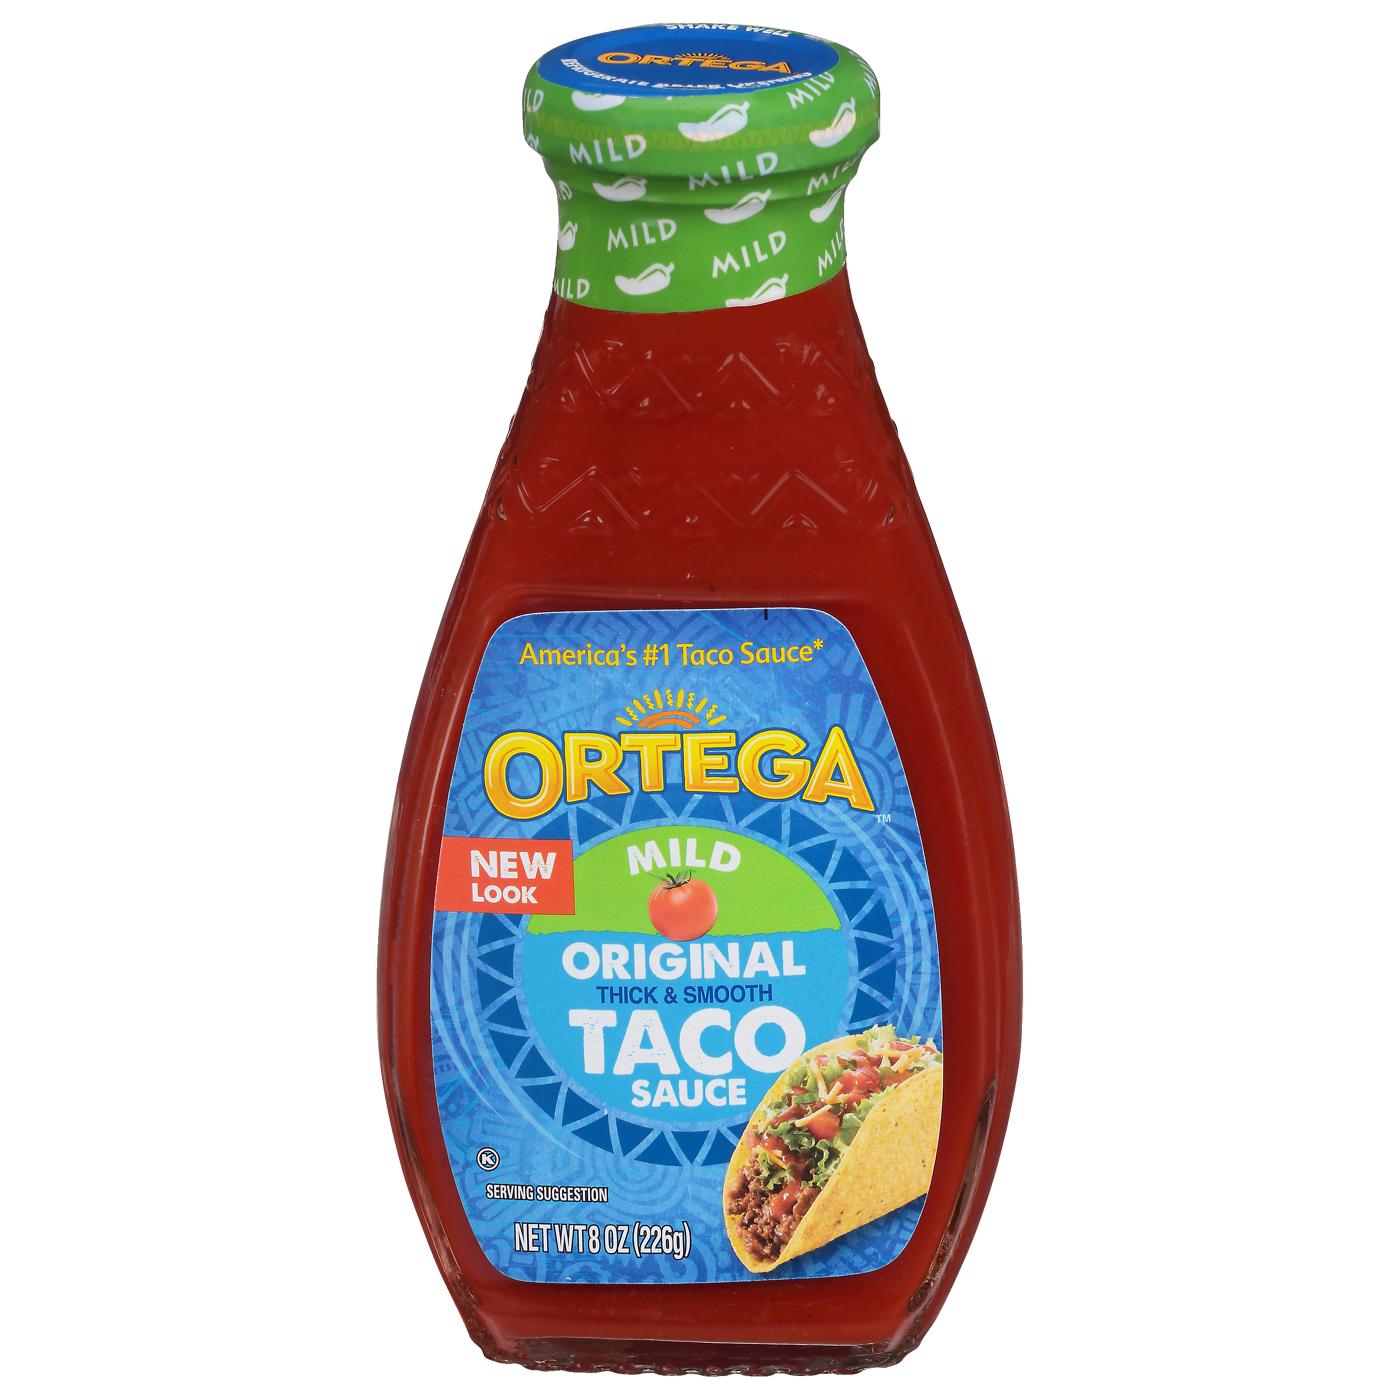 Ortega Mild Original Taco Sauce; image 1 of 3